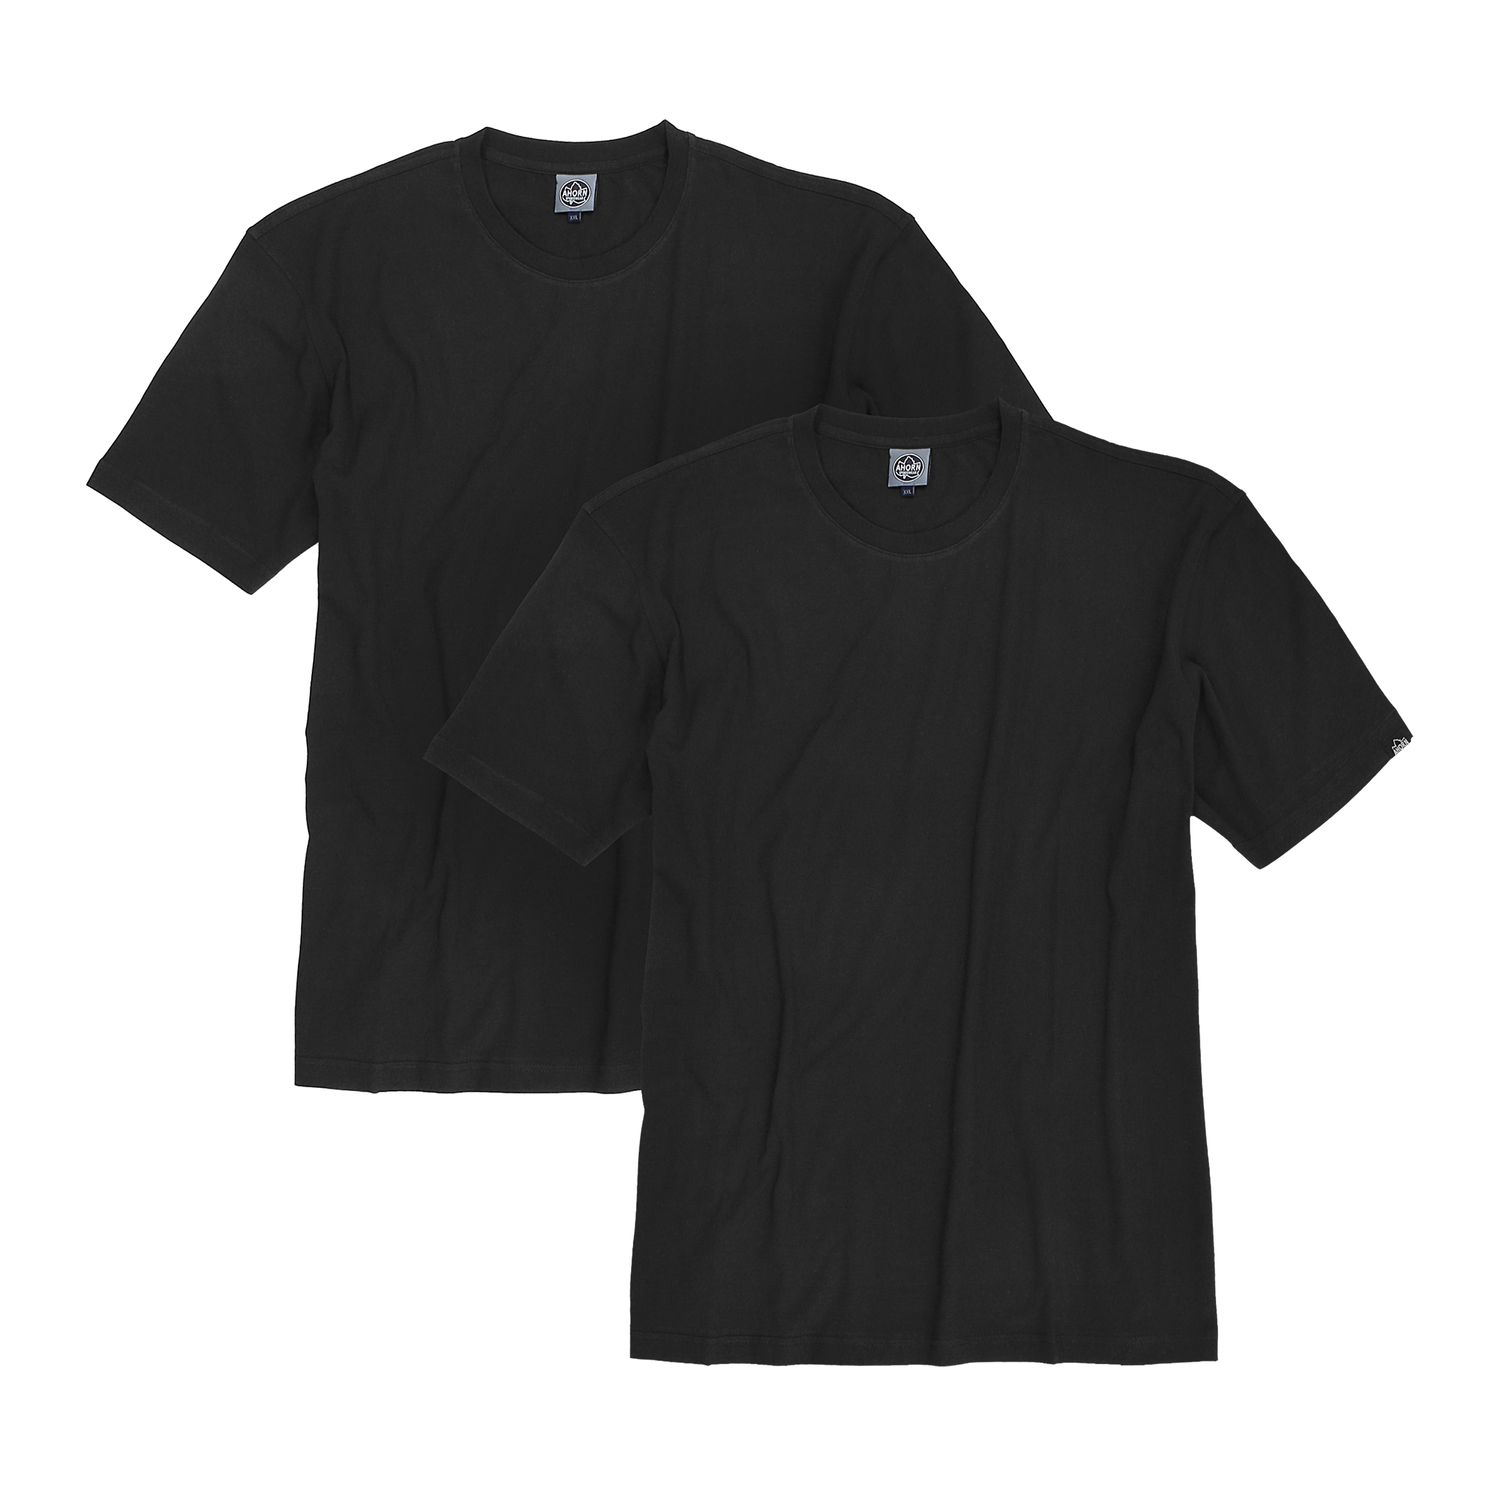 Doppelpack schwarze T-Shirts von Ahorn Sportswear in großen Größen bis 10XL